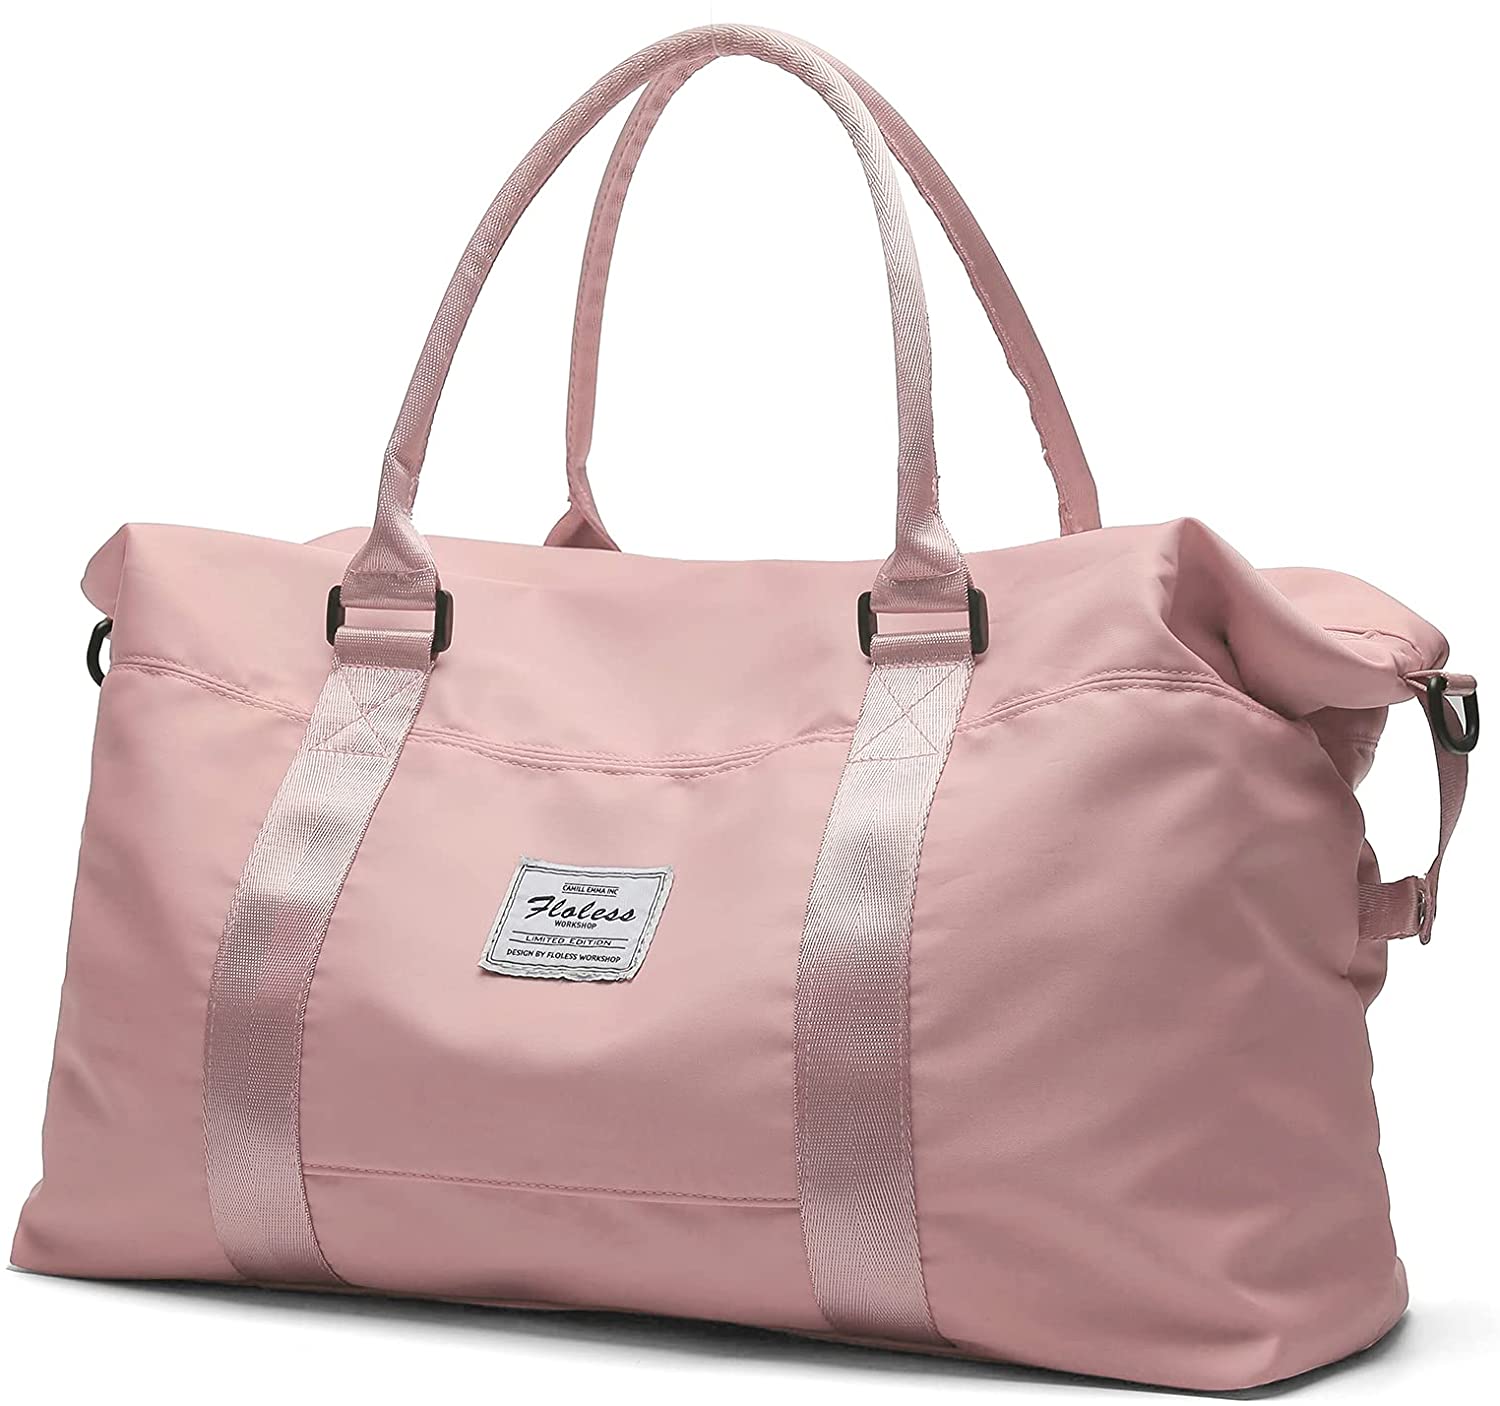 Travel Duffel Bag, Sports Tote Gym Bag, Shoulder Weekender Overnight Bag for Women - image 1 of 3